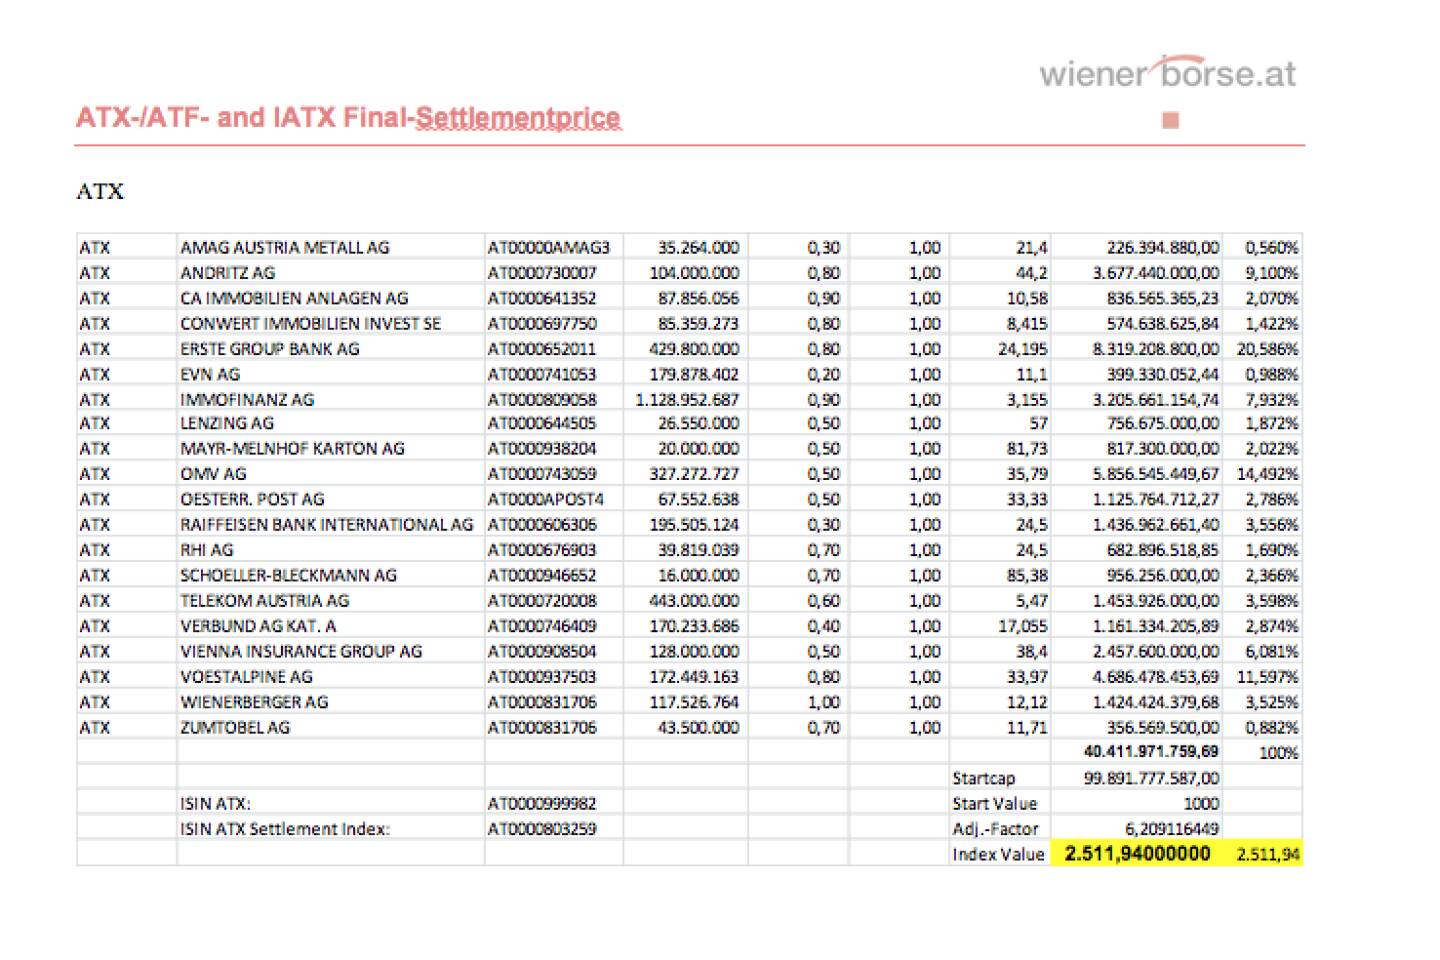 ATX-Settlement September 2013 bei 2511,94 (c) Wiener Börse